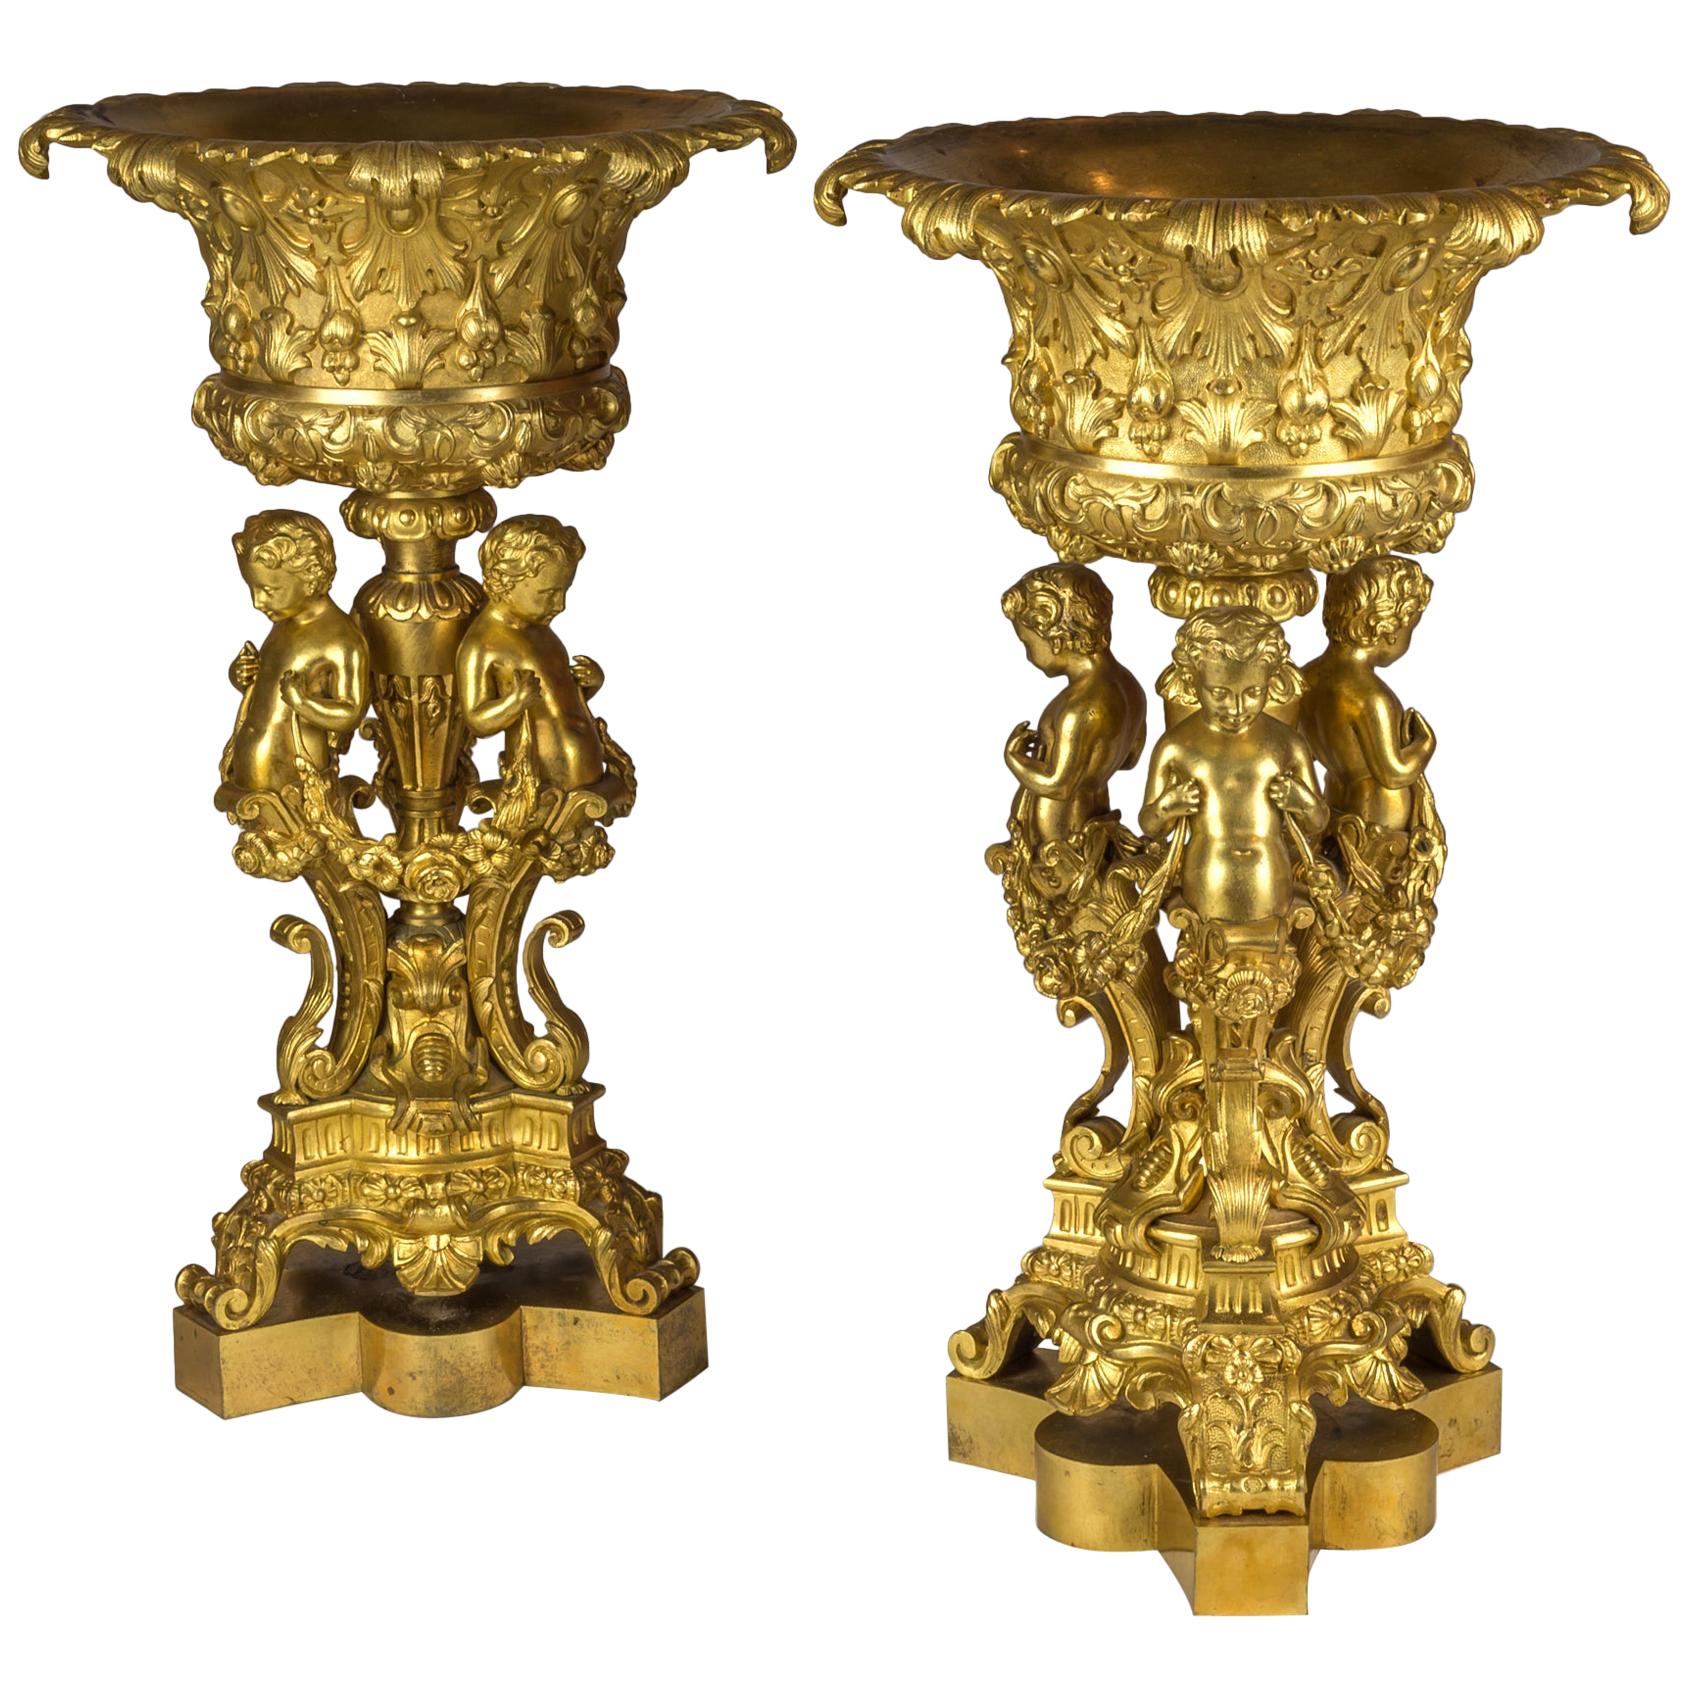 Paar figurale Tazzas aus vergoldeter Bronze, getragen von drei Putten